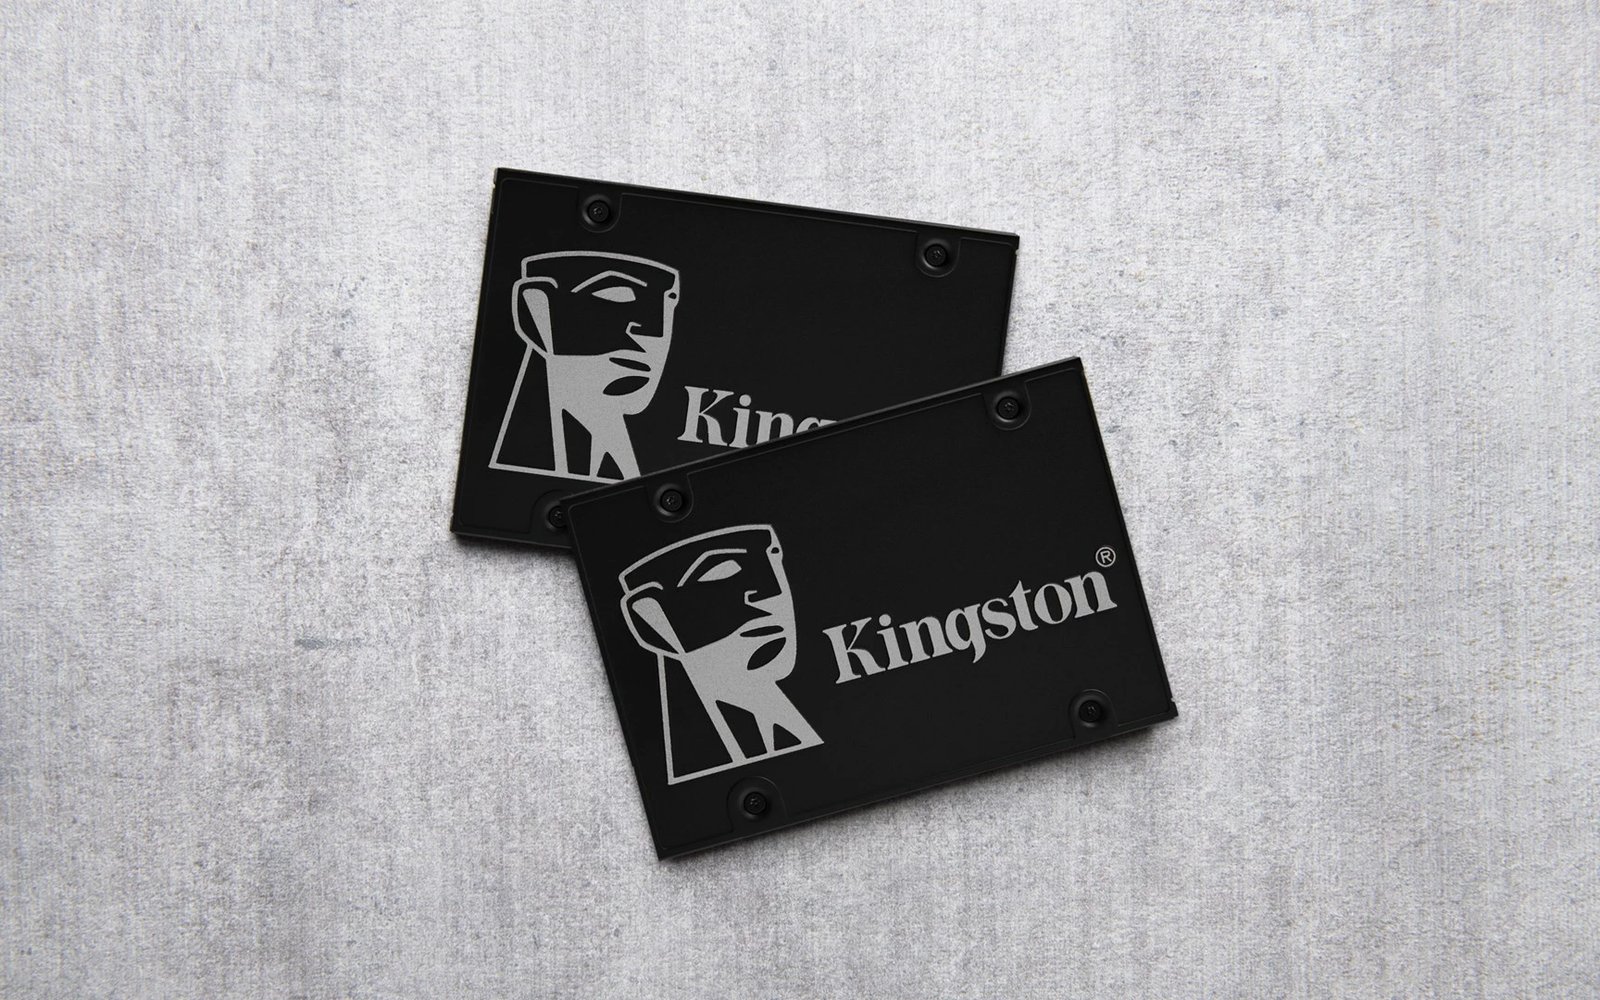 Disk SSD Kingston KC600, 2.5", Serial ATA III, 3D TLC, 512GB, e zezë